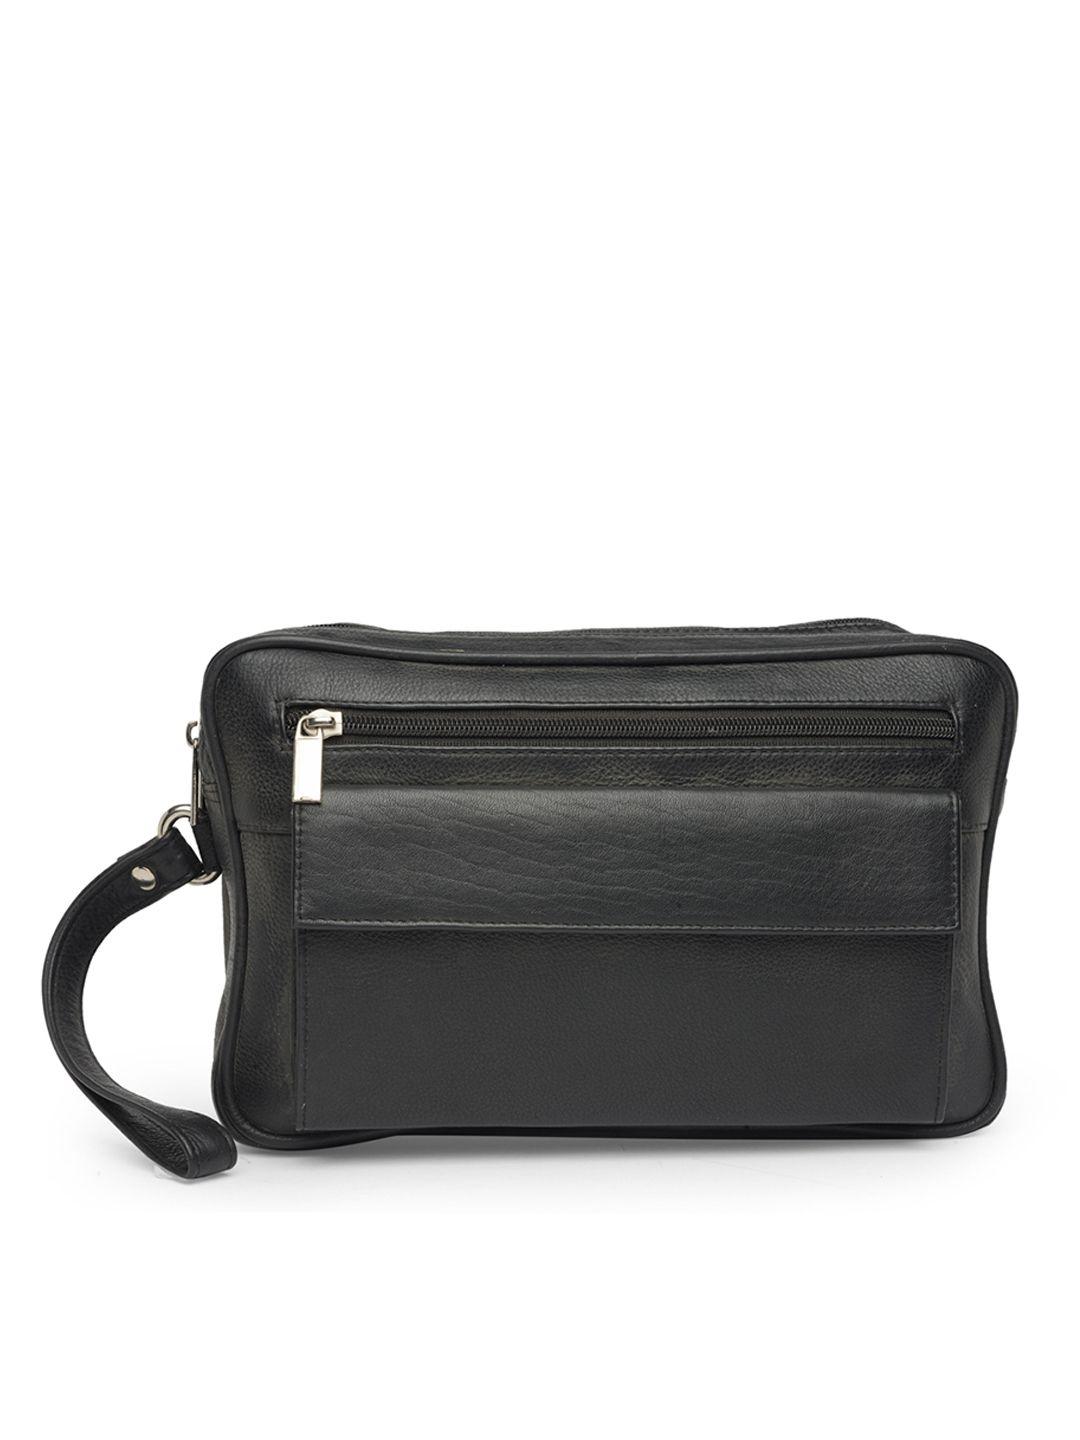 teakwood leathers unisex black solid messenger bag